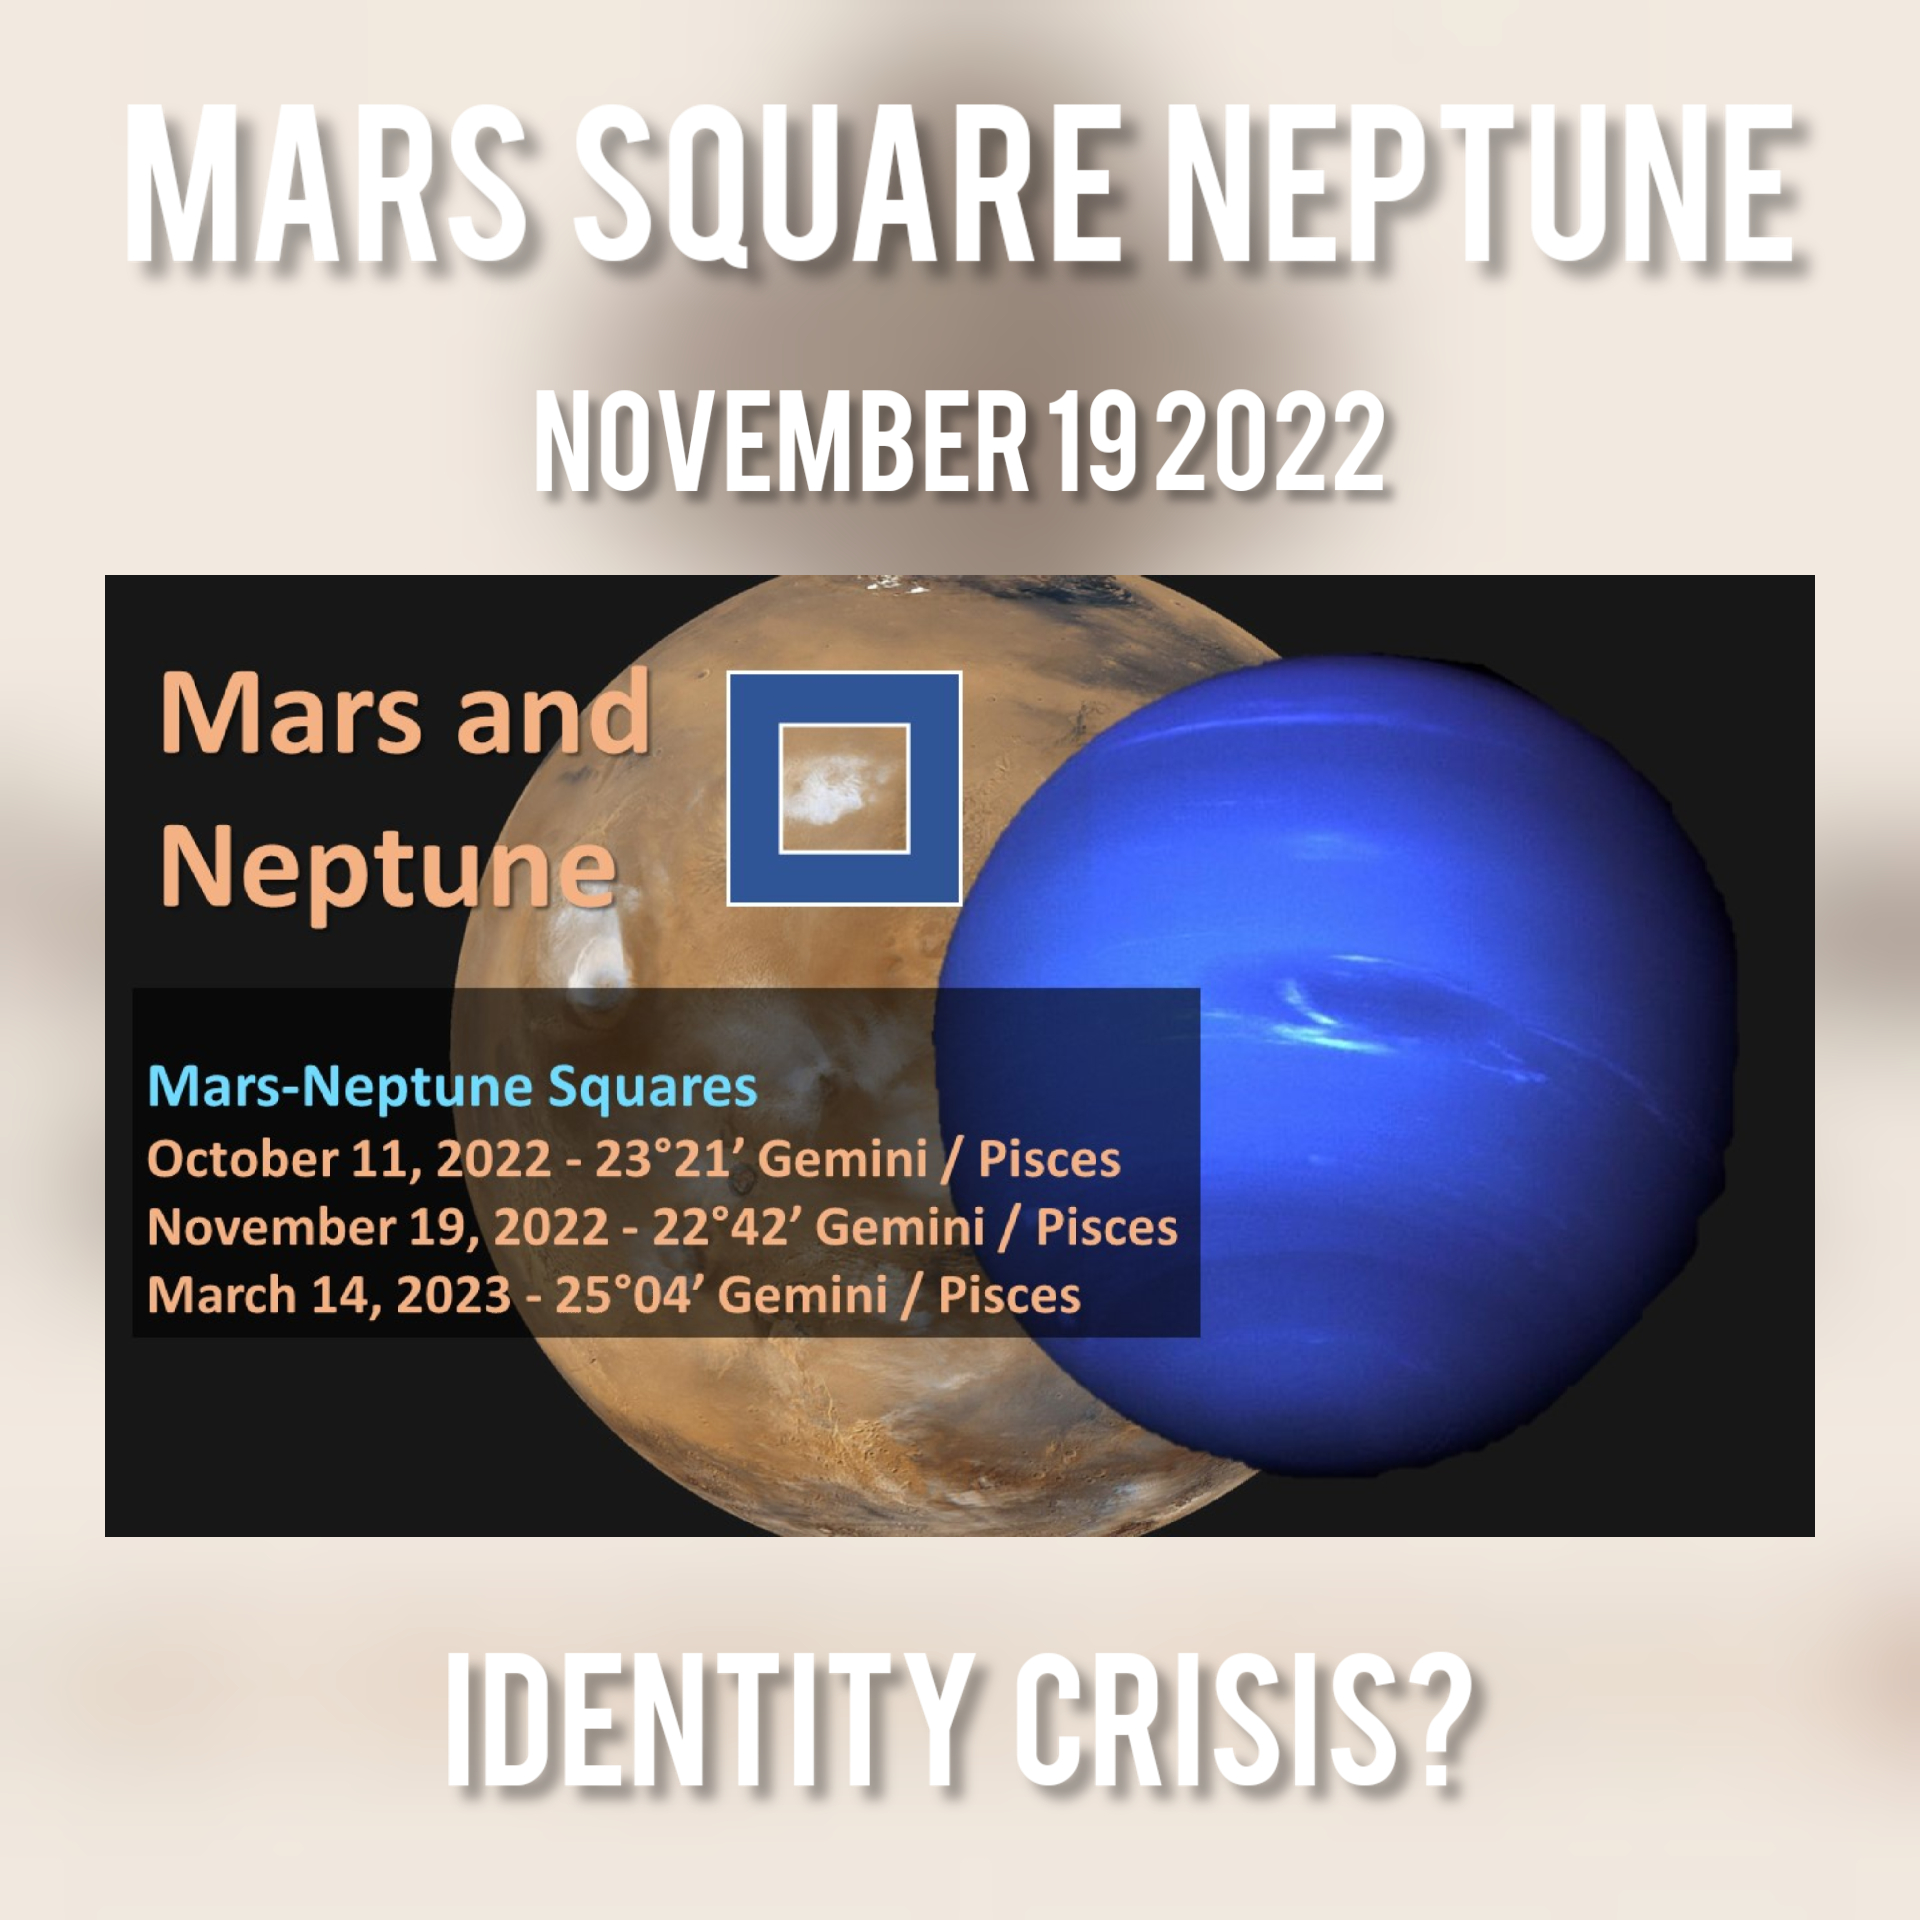 Mars-Neptune Square